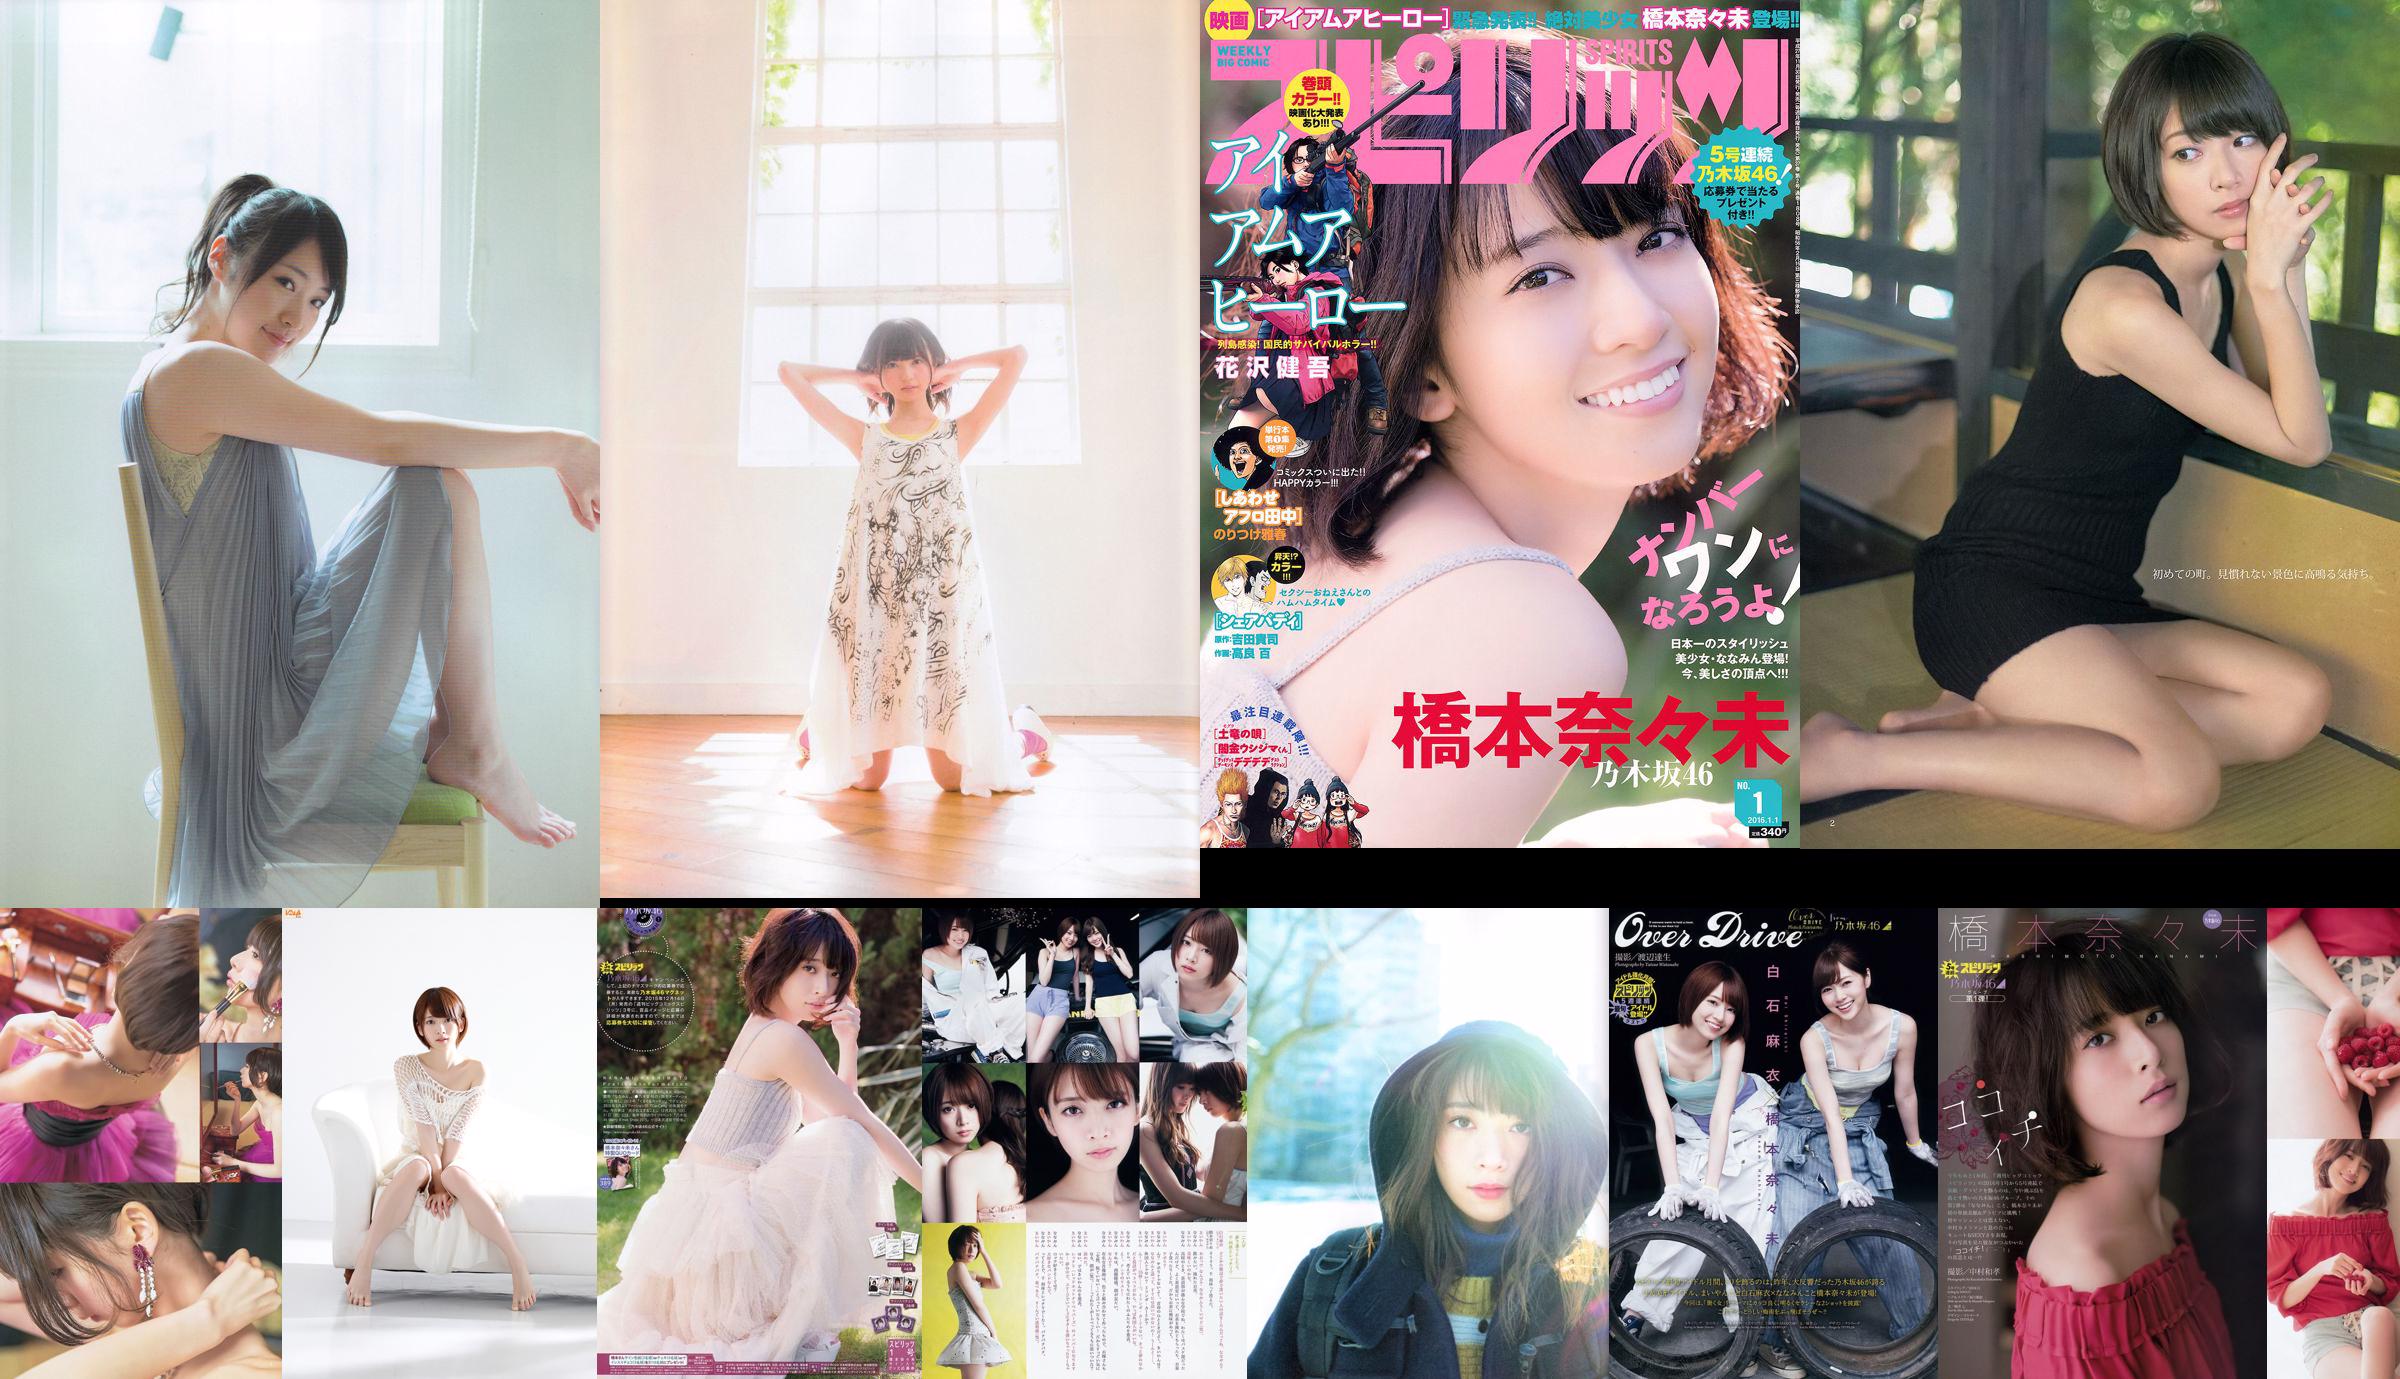 Nanami Hashimoto (Nogizaka 46 thành viên) [Bomb.TV] Tháng 6 năm 2013 No.6d3e98 Trang 1